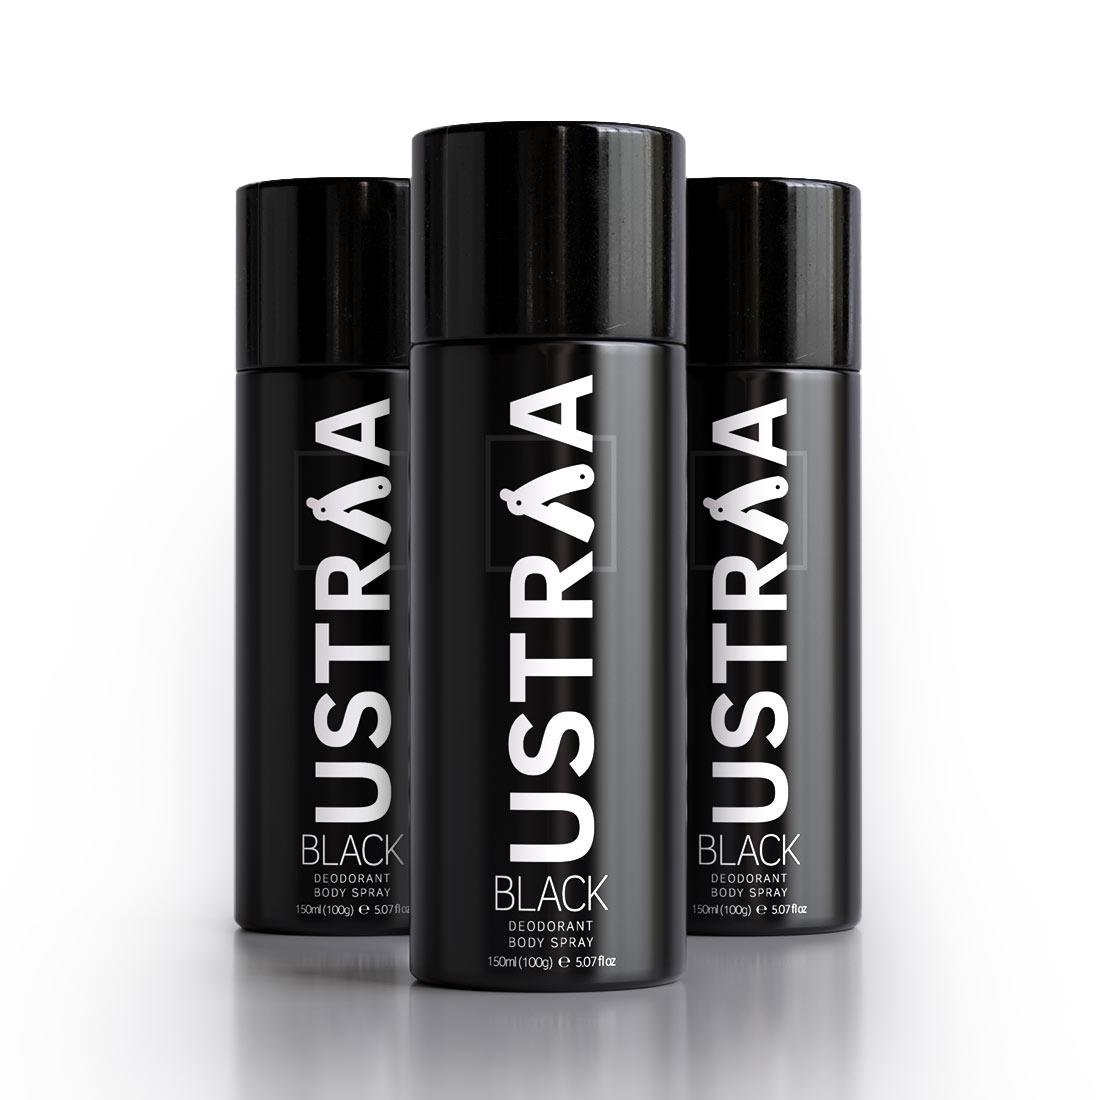 Ustraa Black Deodorant Body Spray (Set of 3) | 24-Hour Freshness for Men